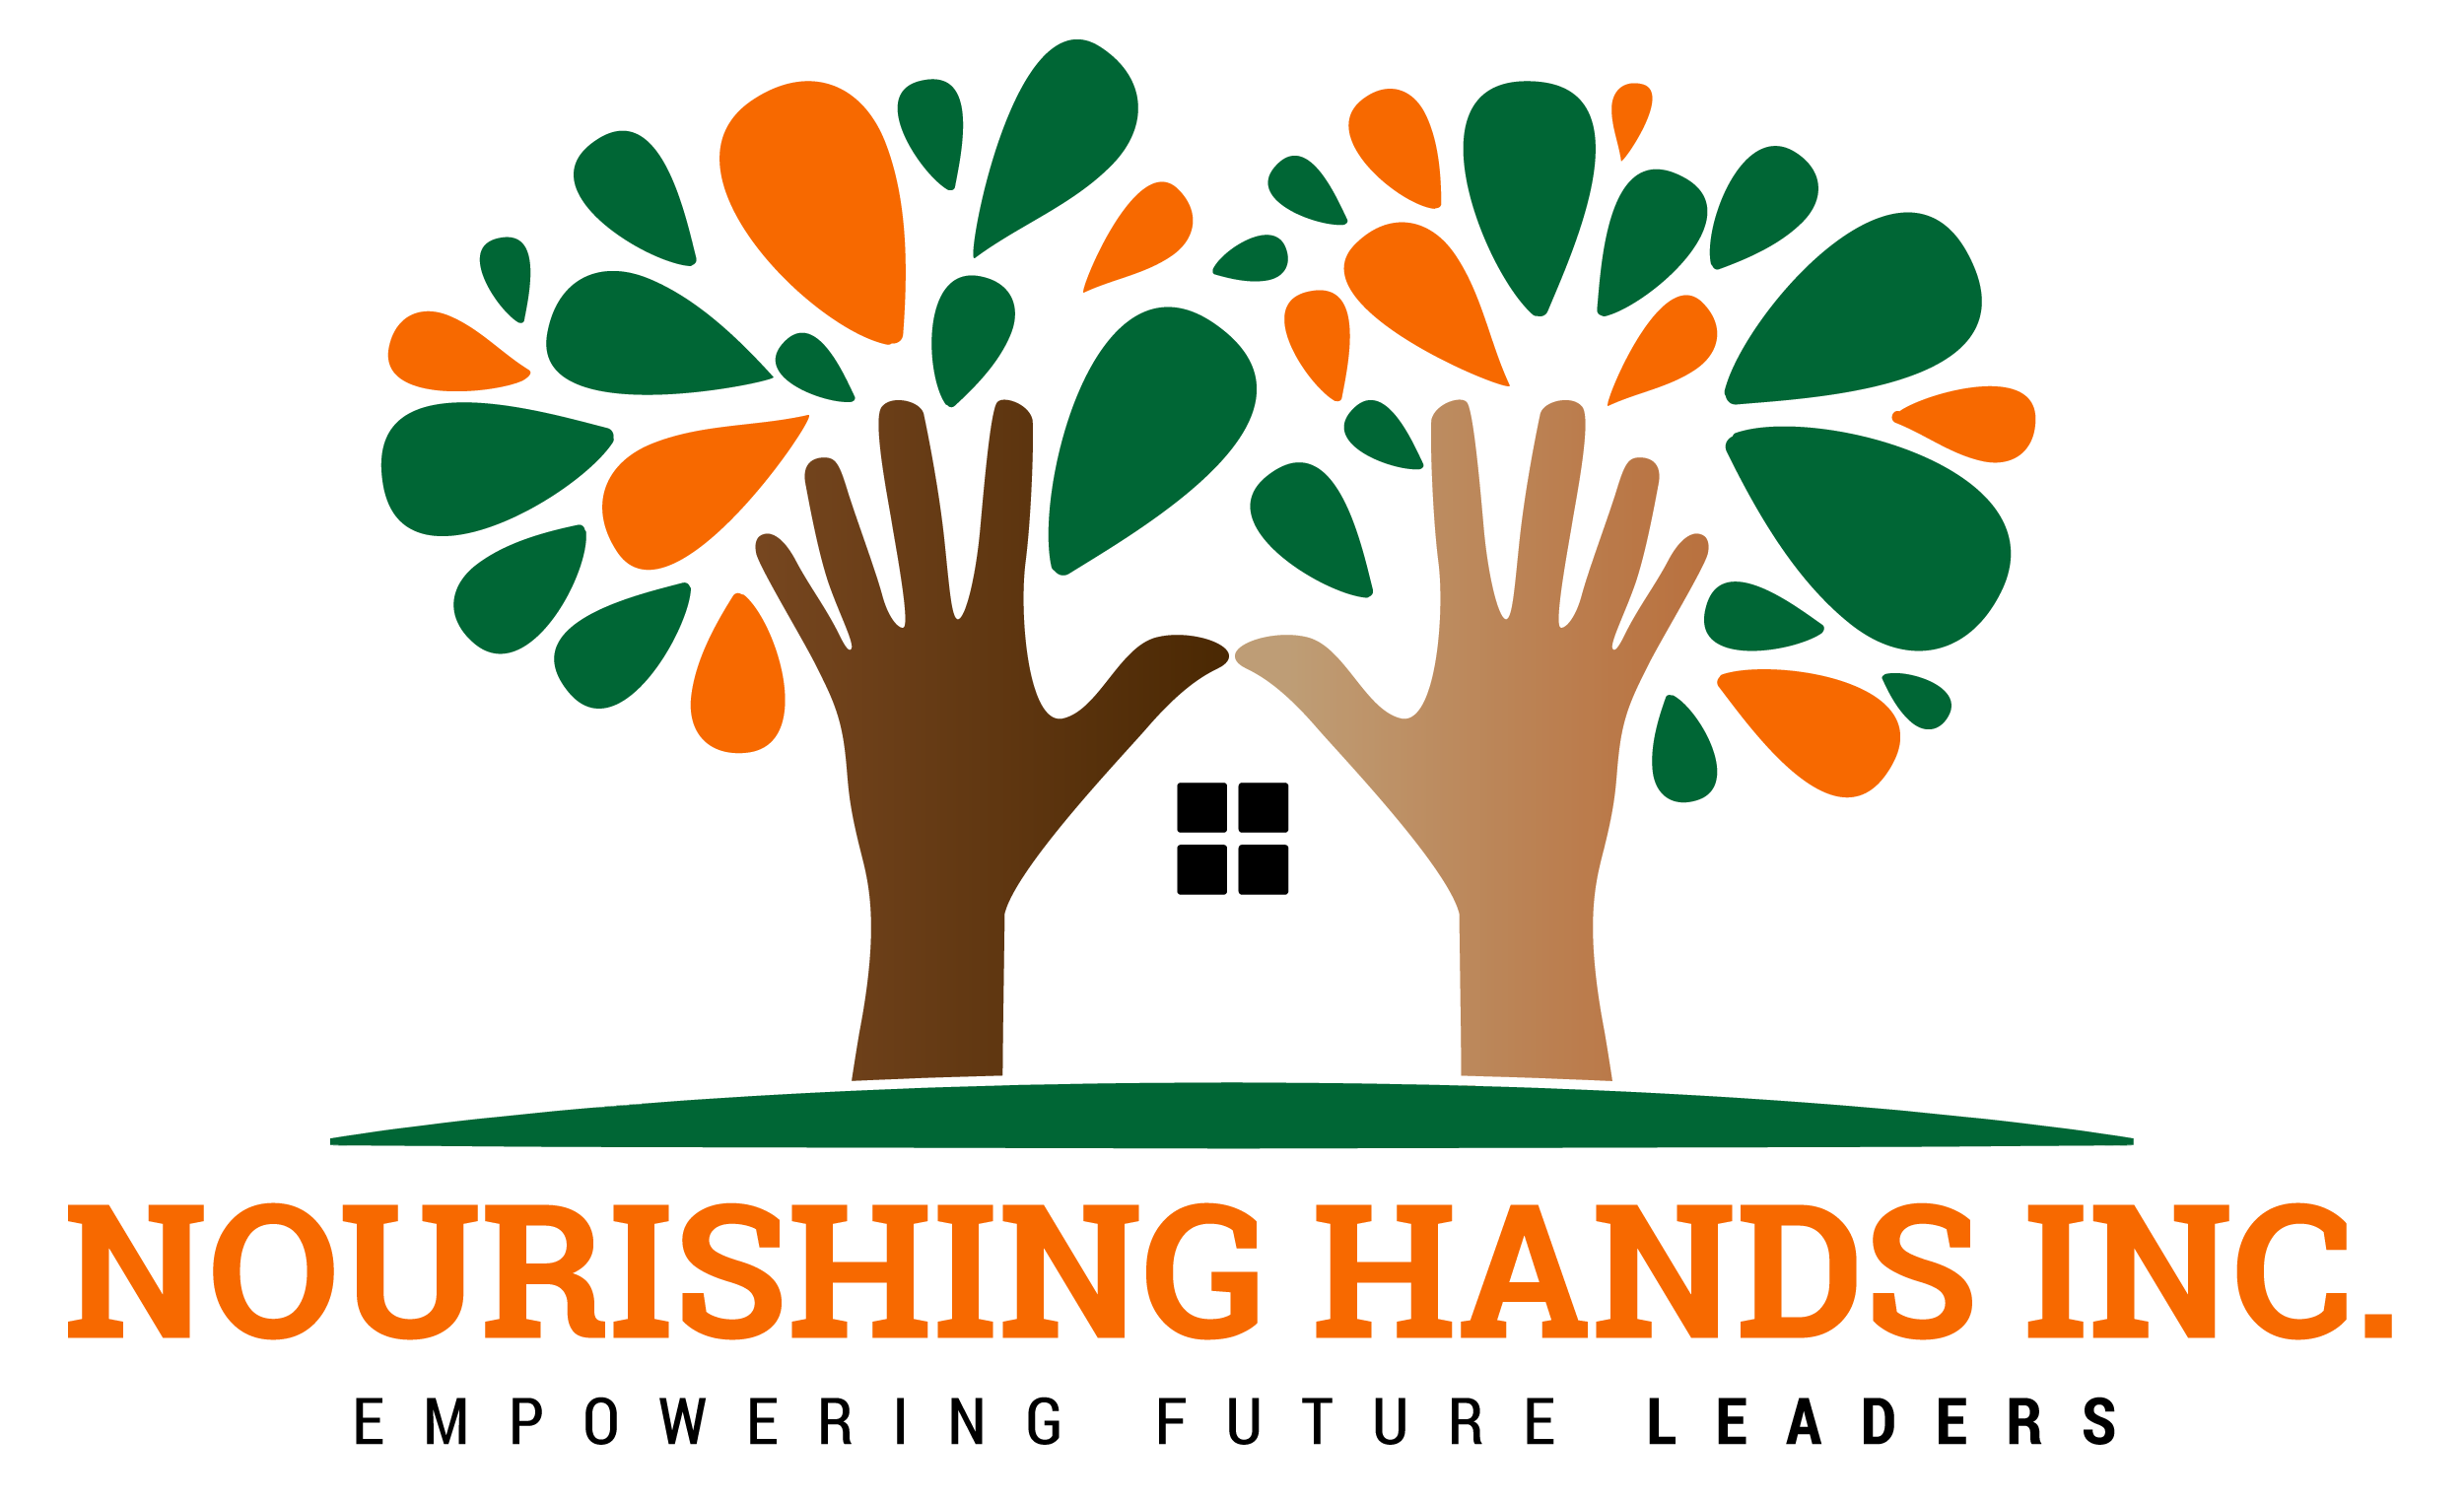 Nourishing Hands Inc. logo